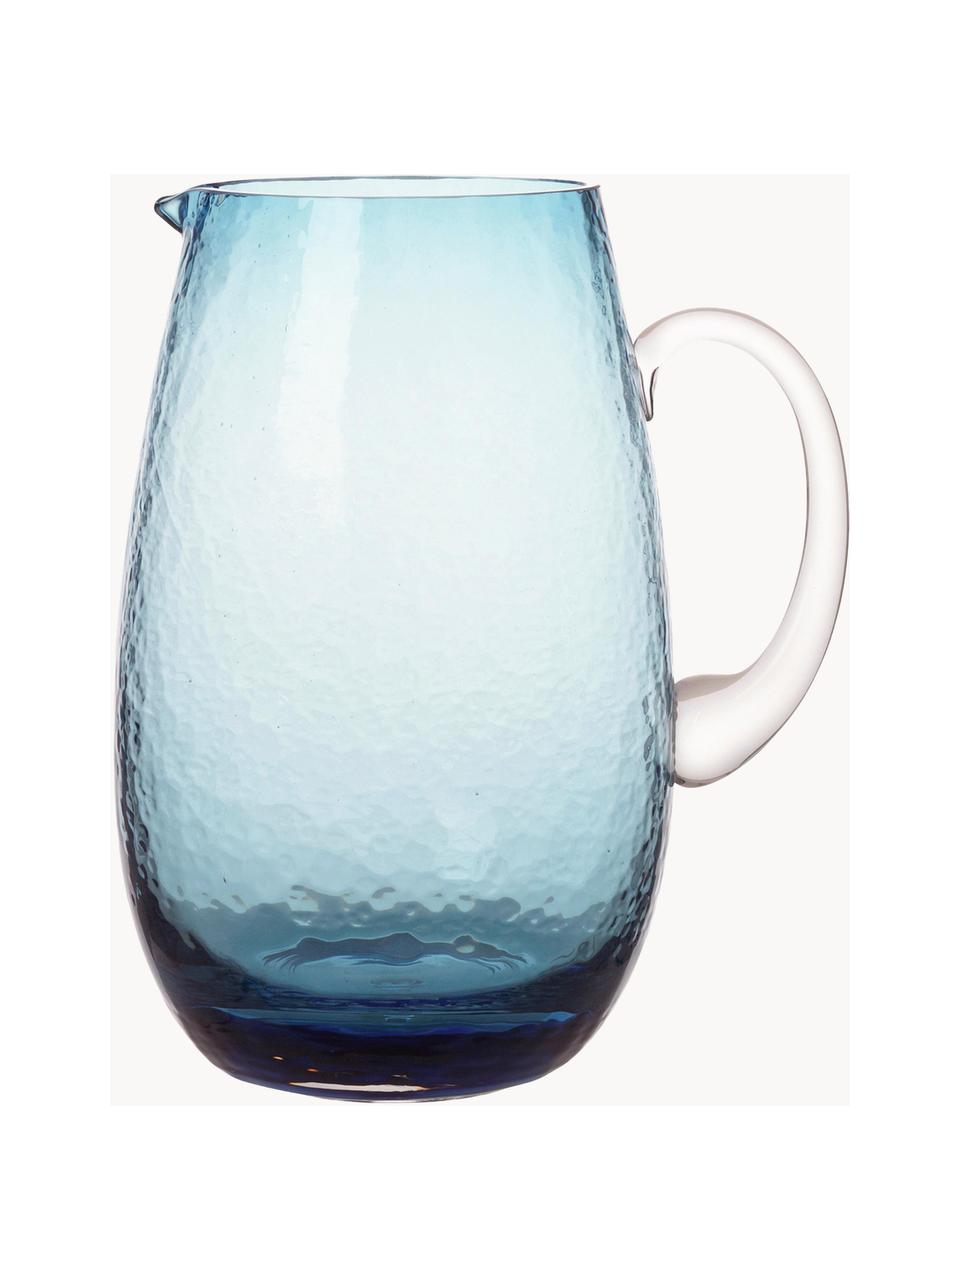 Mundgeblasener Krug Hammered, 2 L, Glas, mundgeblasen, Blau, transparent, 2 L